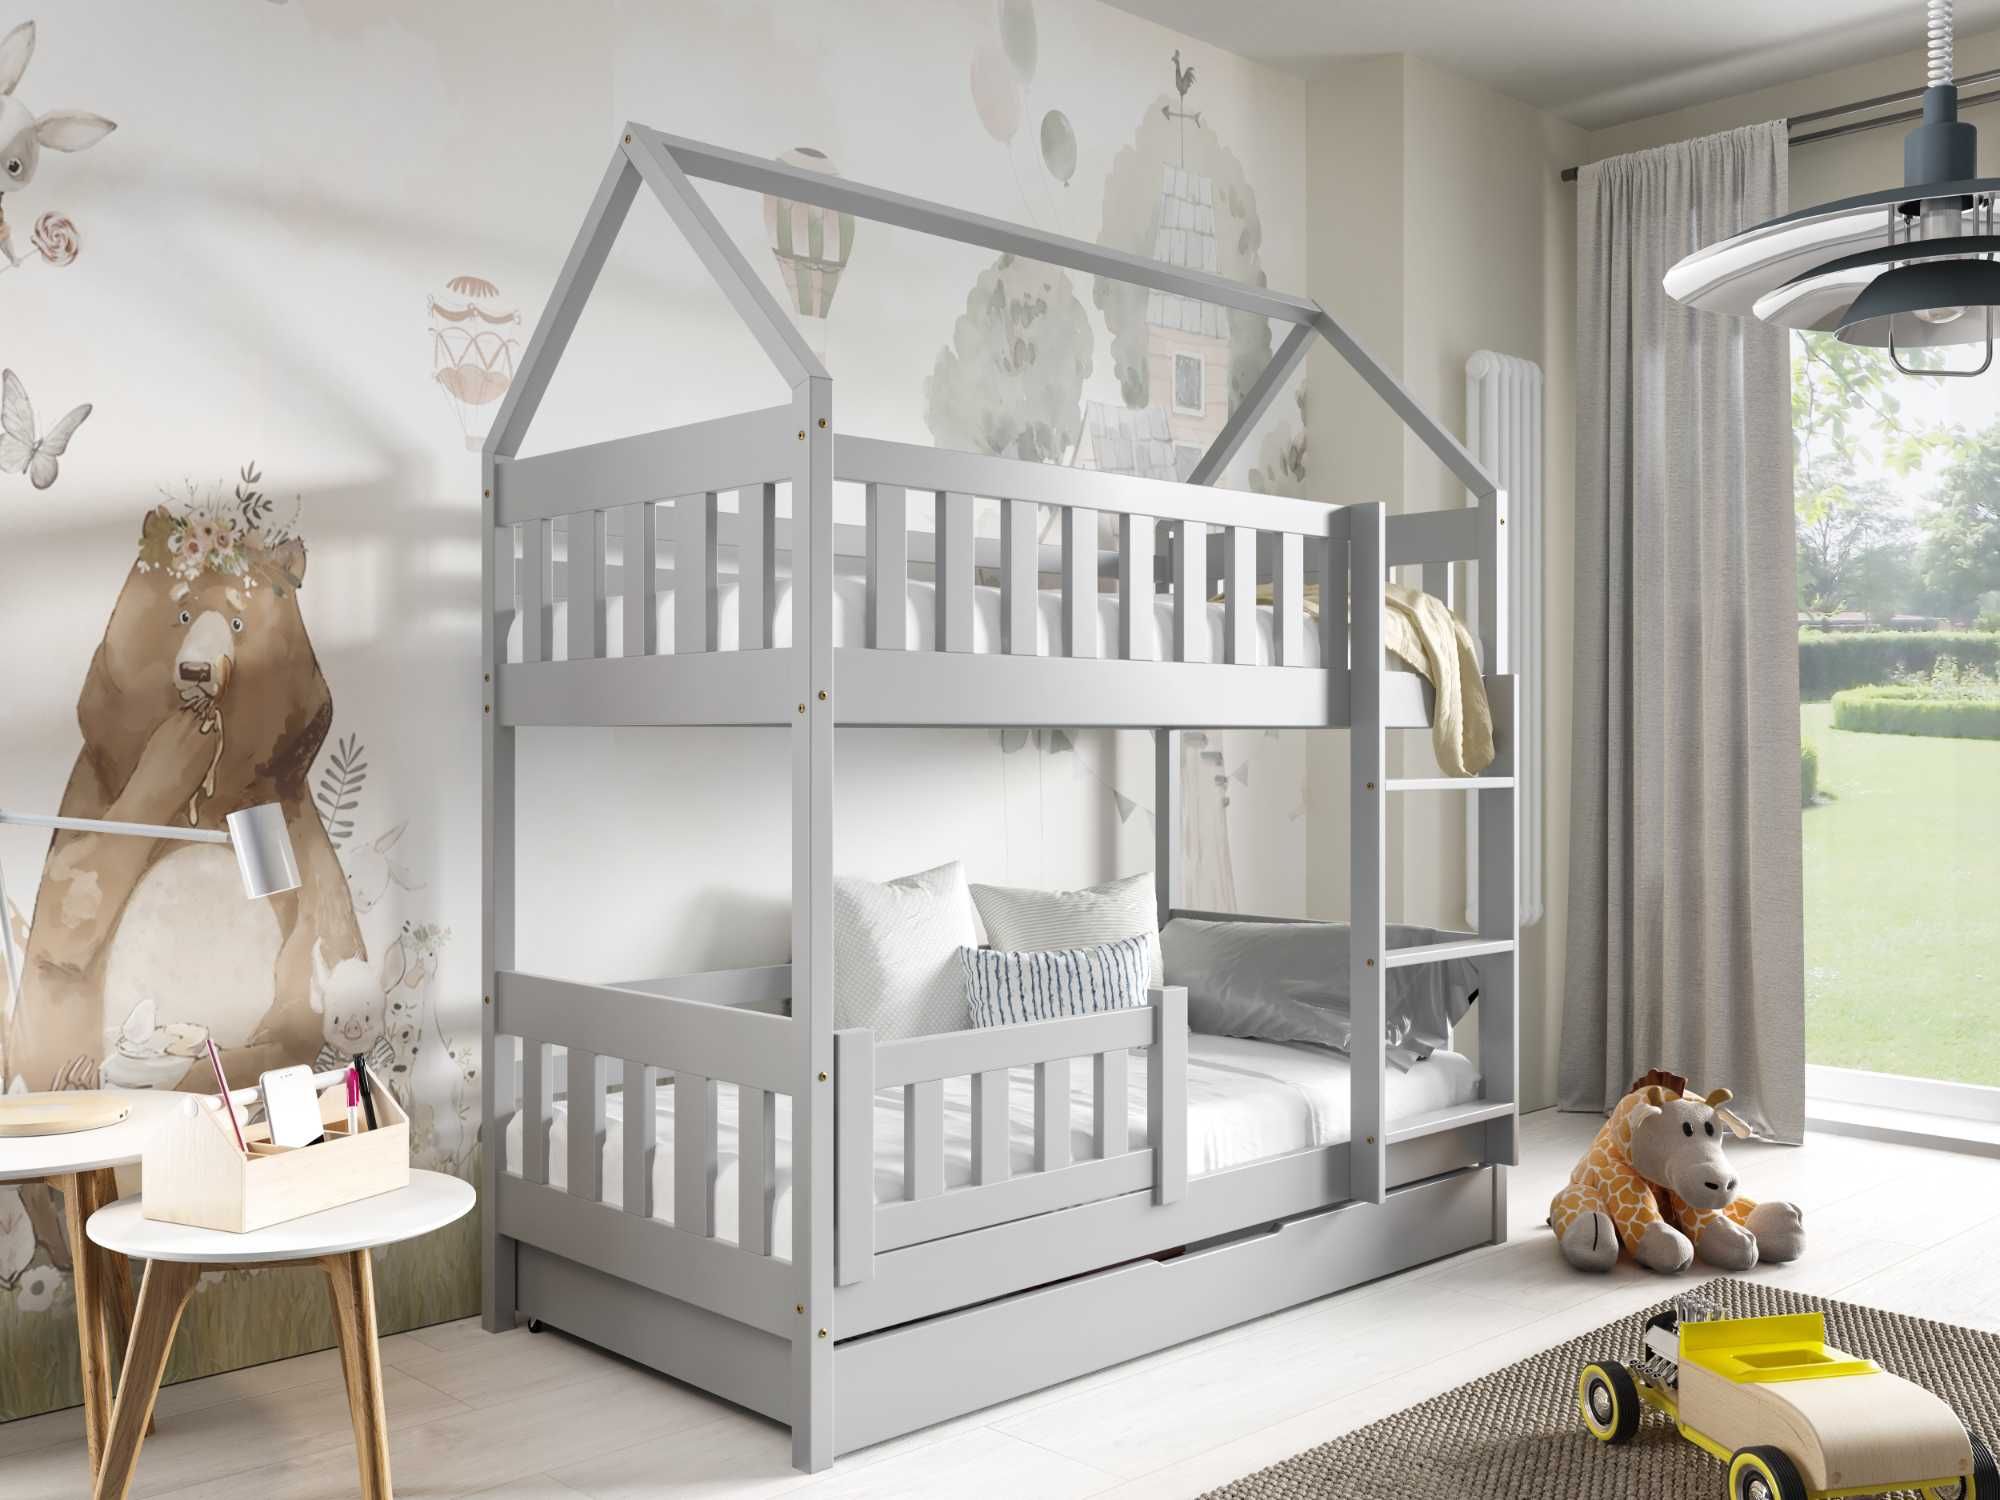 Łóżko dla dzieci sosnowe piętrowe ZUZIA - materace w zestawie!